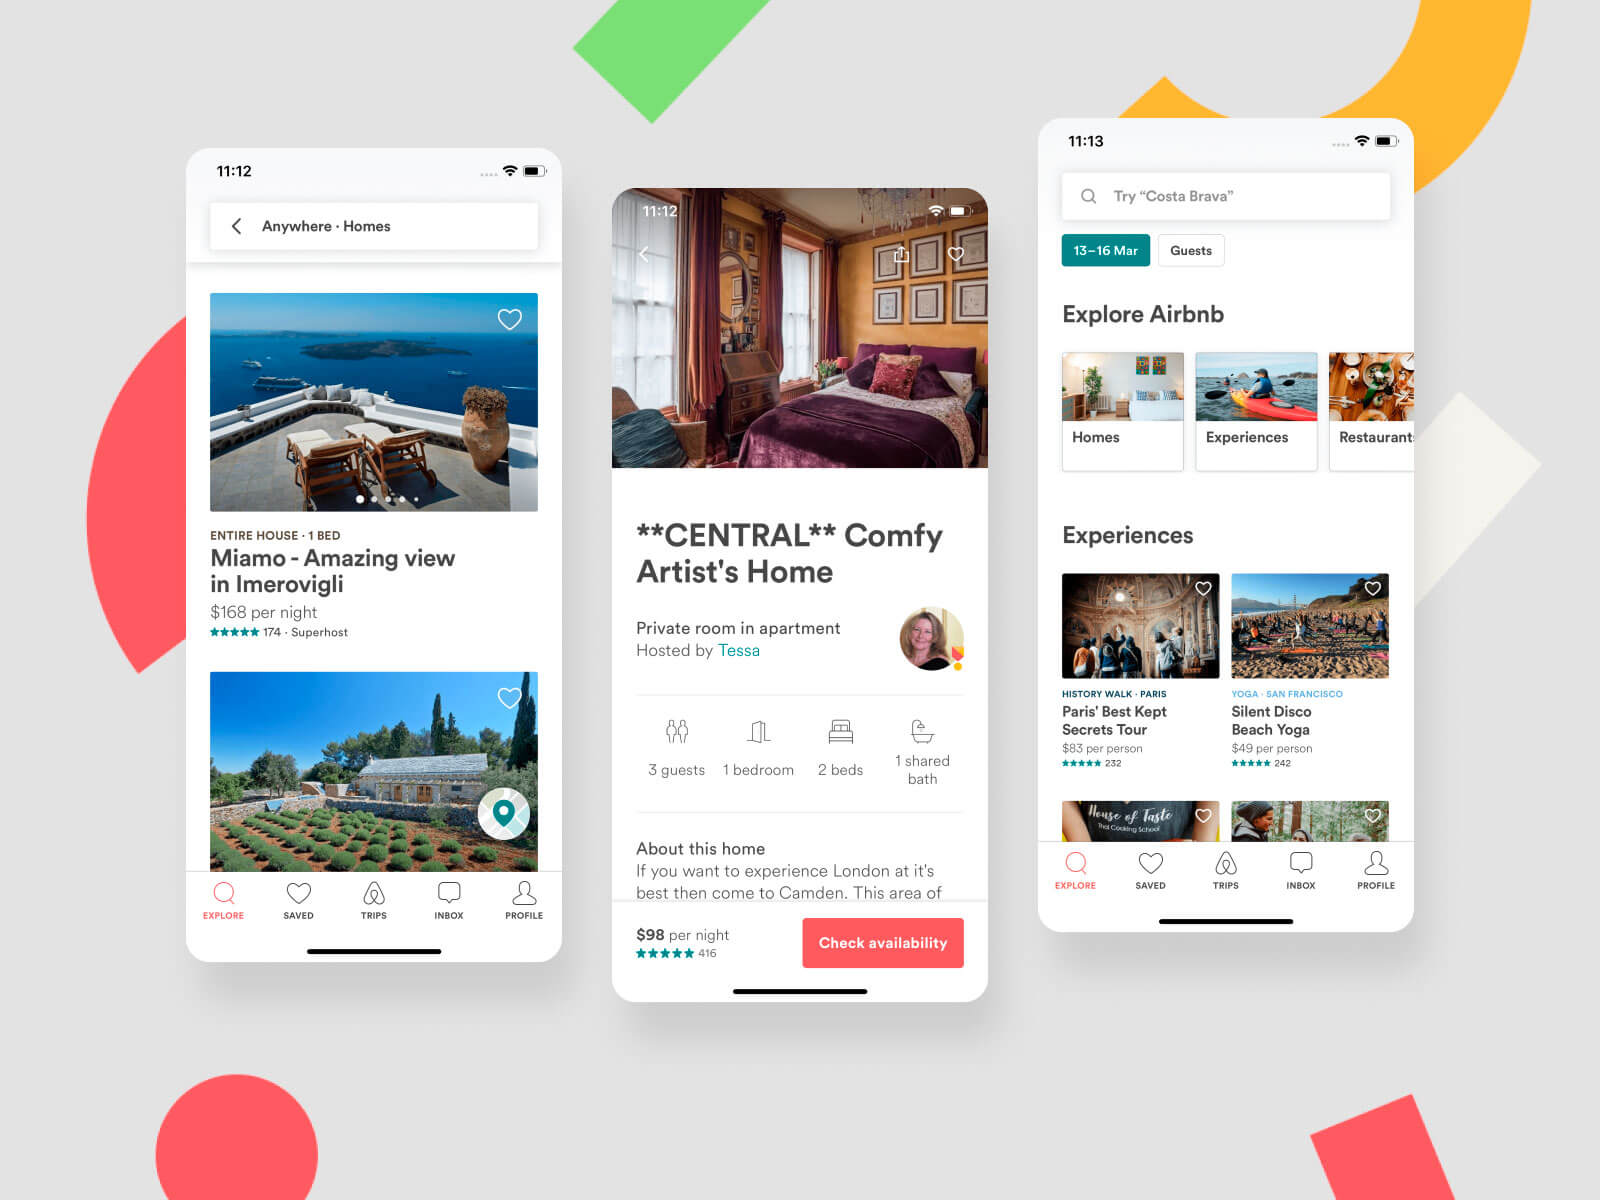 แอพที่คล้ายกับ airbnb, แอพอื่นๆ เช่น airbnb, แอพที่คล้ายกับ airbnb, แอพที่คล้ายกันของ airbnb, แอพประเภท airbnb, แอพที่คล้ายกับ airbnb